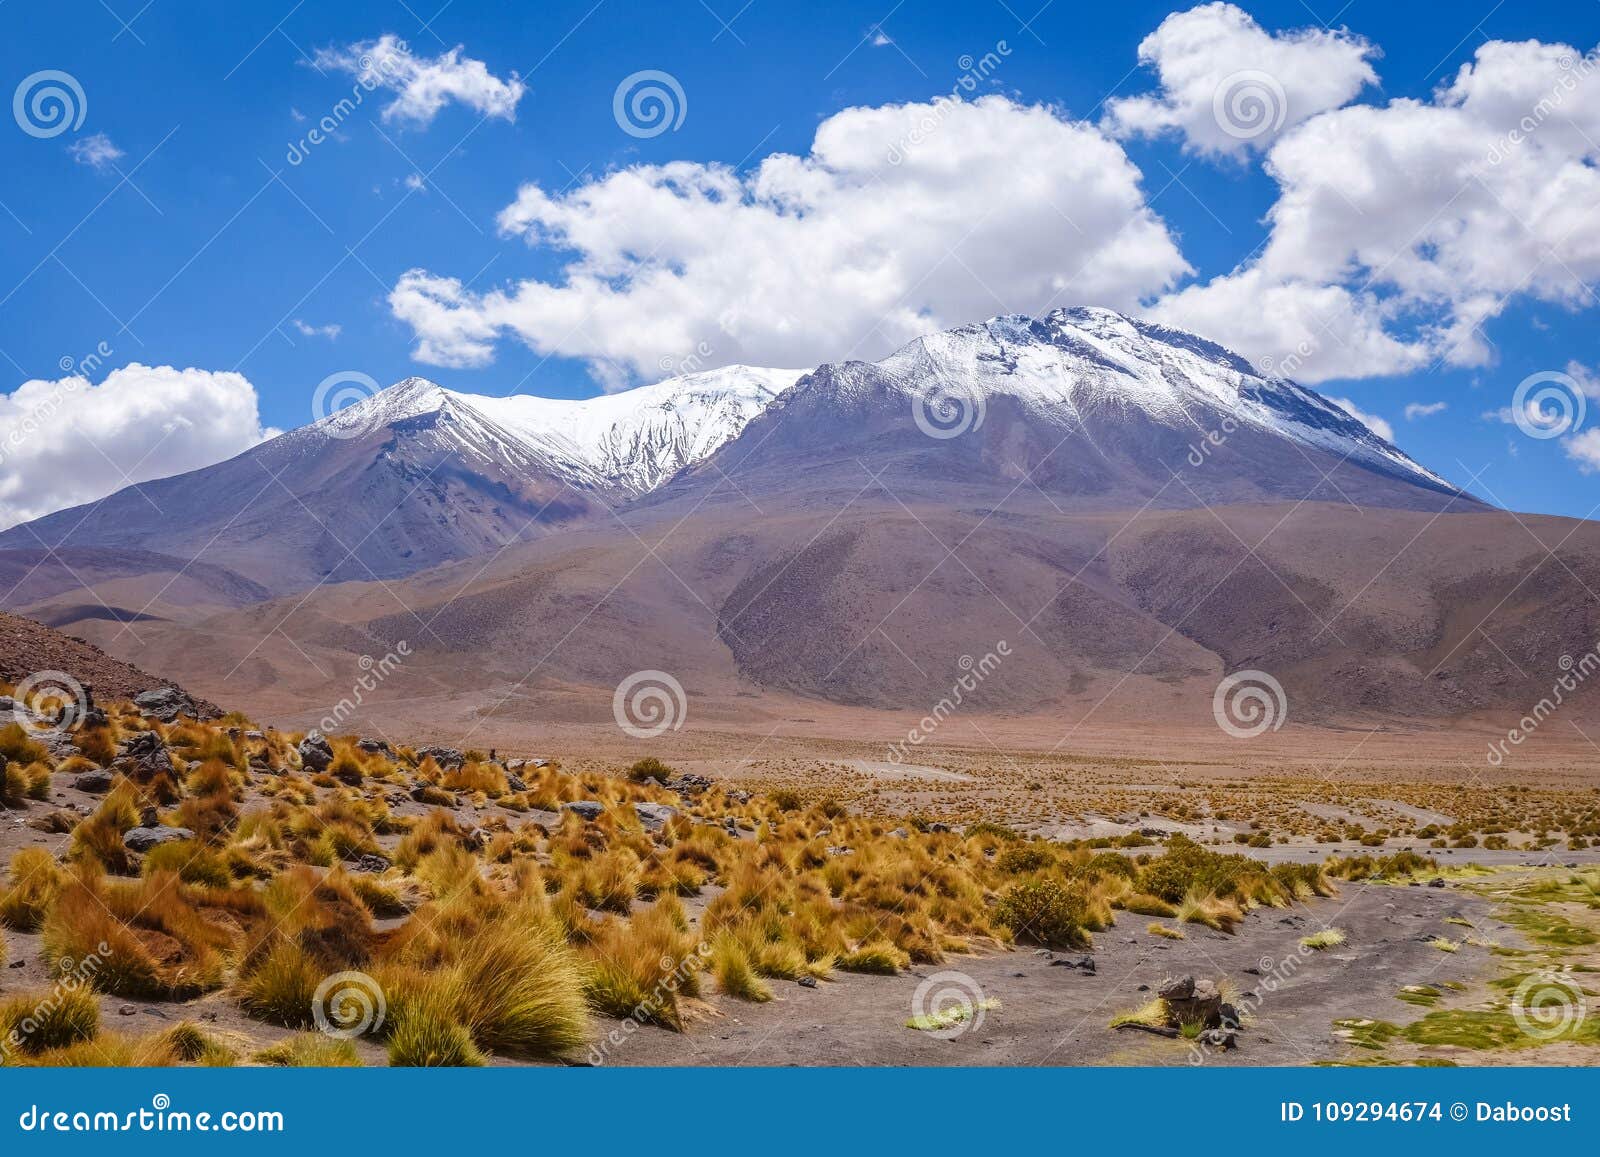 Altiplano Mountains in Sud Lipez Reserva, Bolivia Stock Photo - Image ...